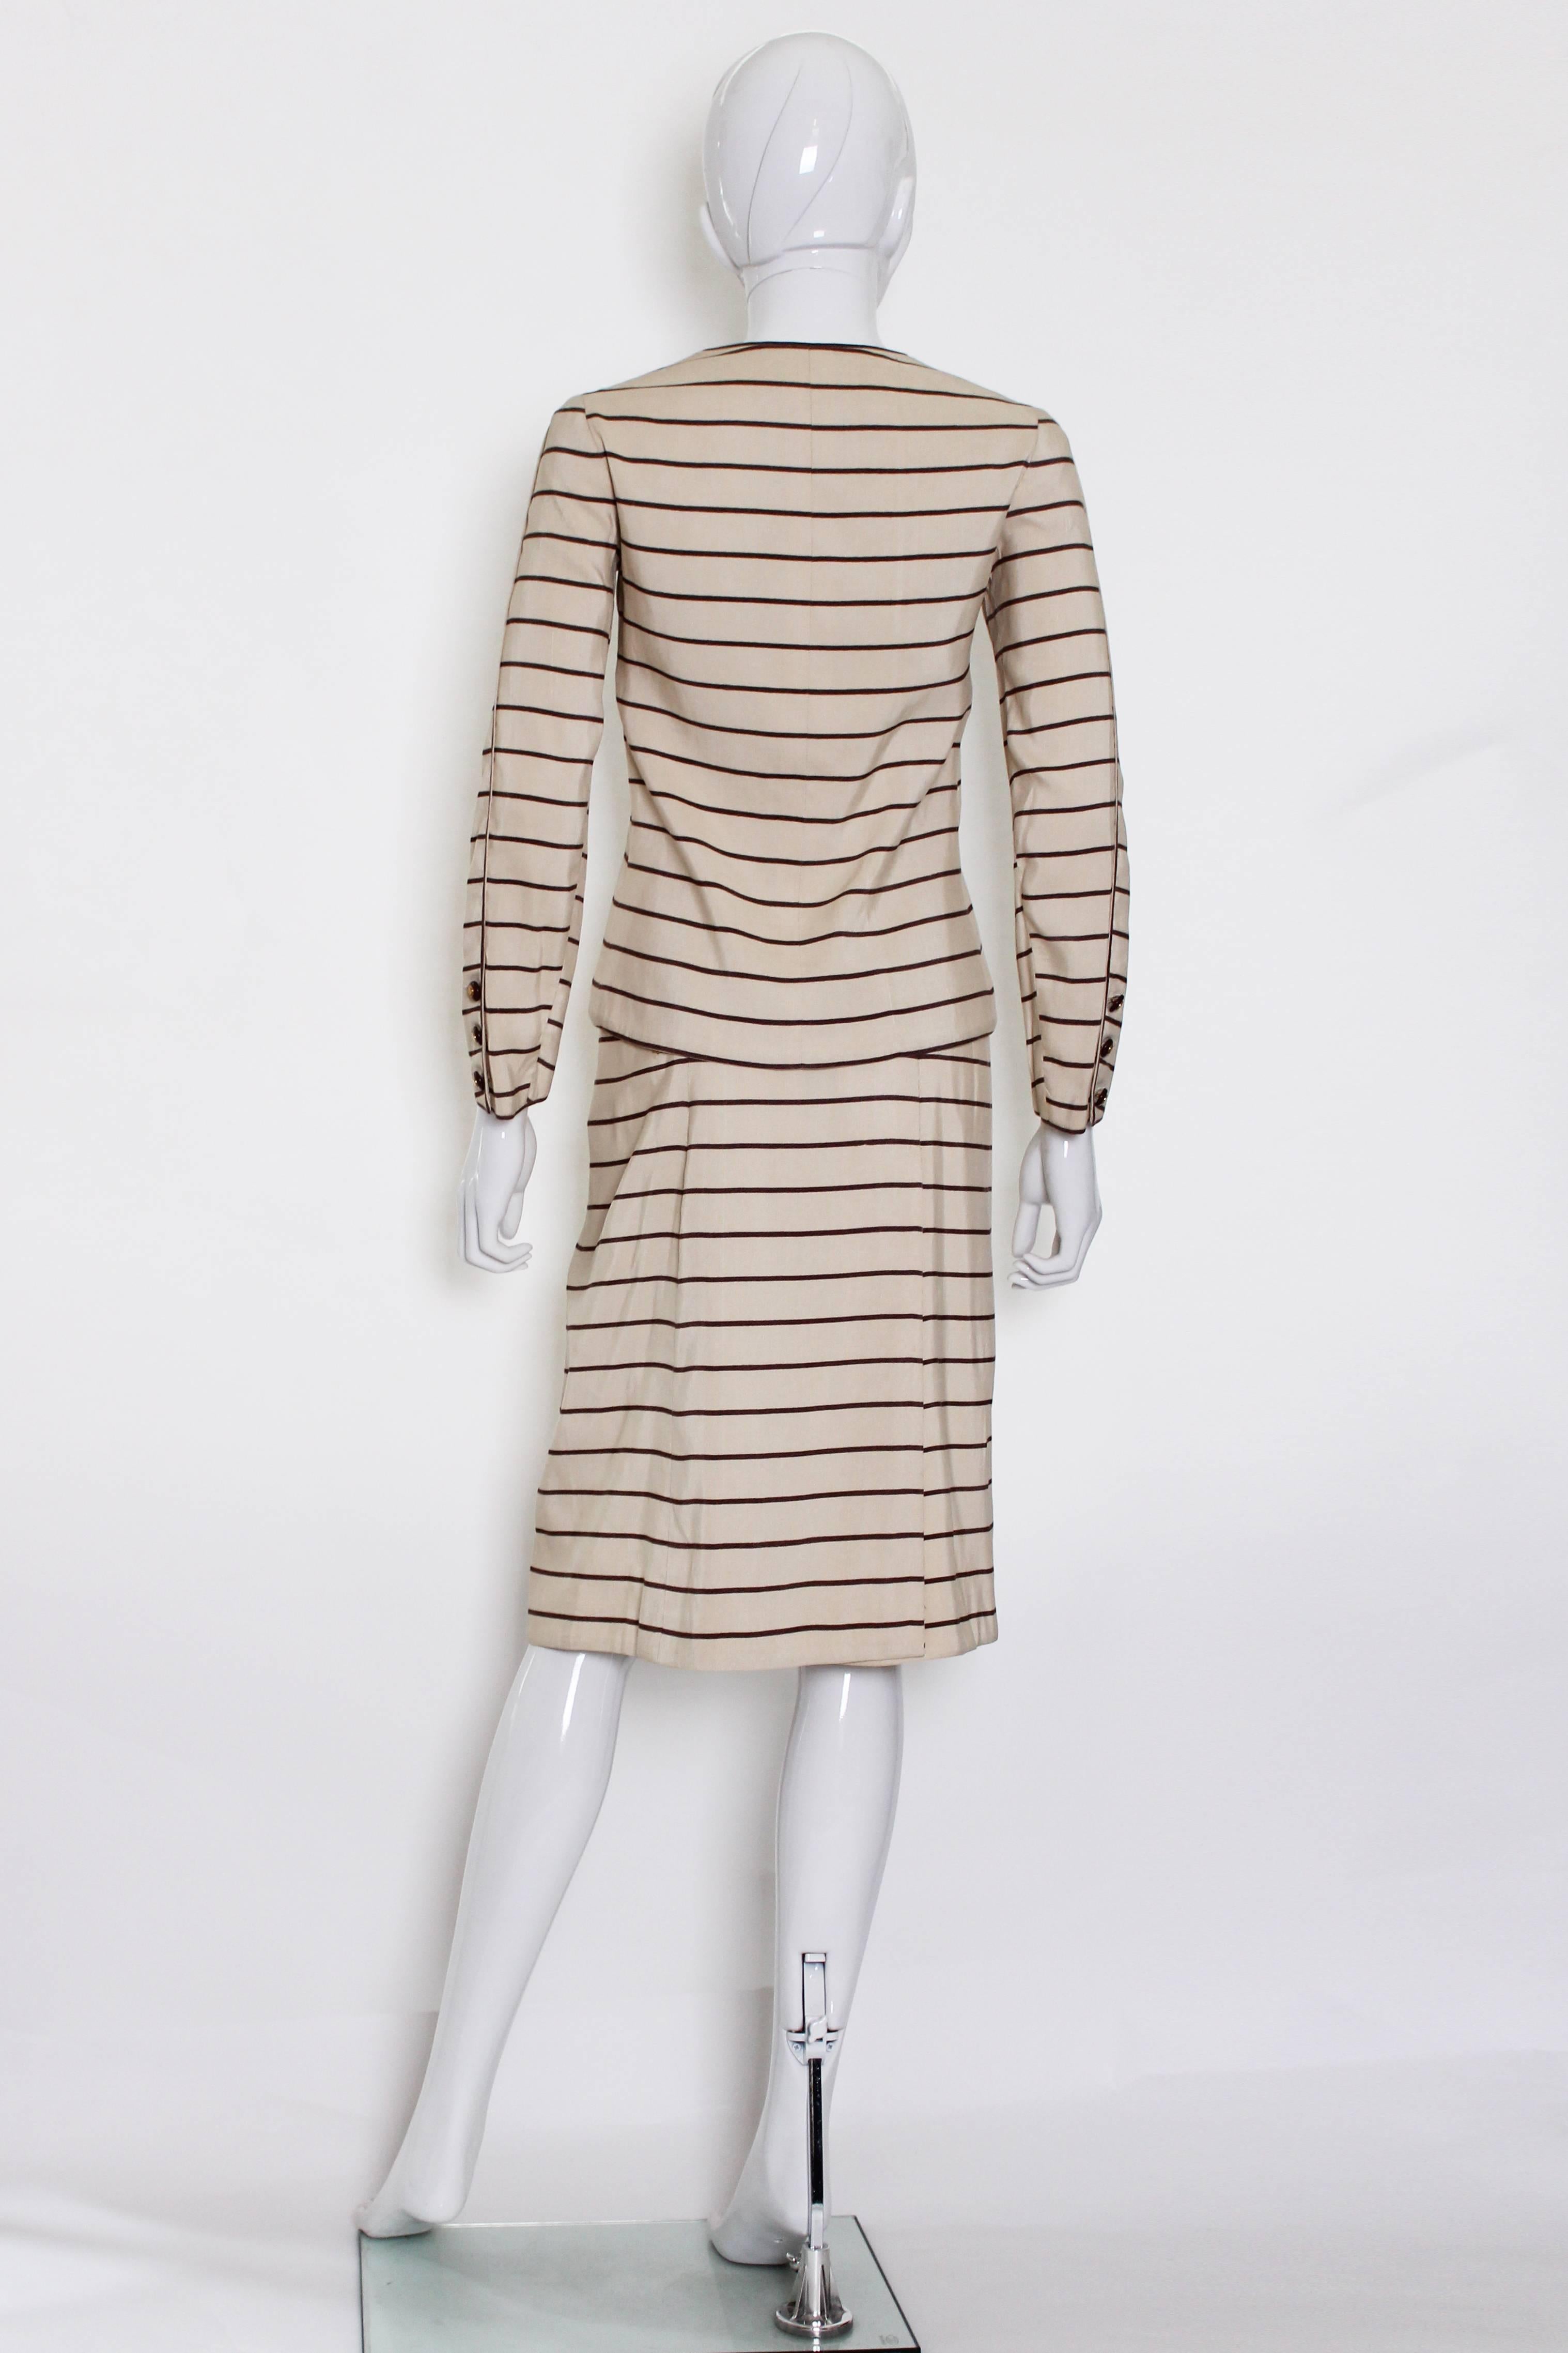 Beige Vintage Chanel Haut Couture Skirt Suit 1974 For Sale